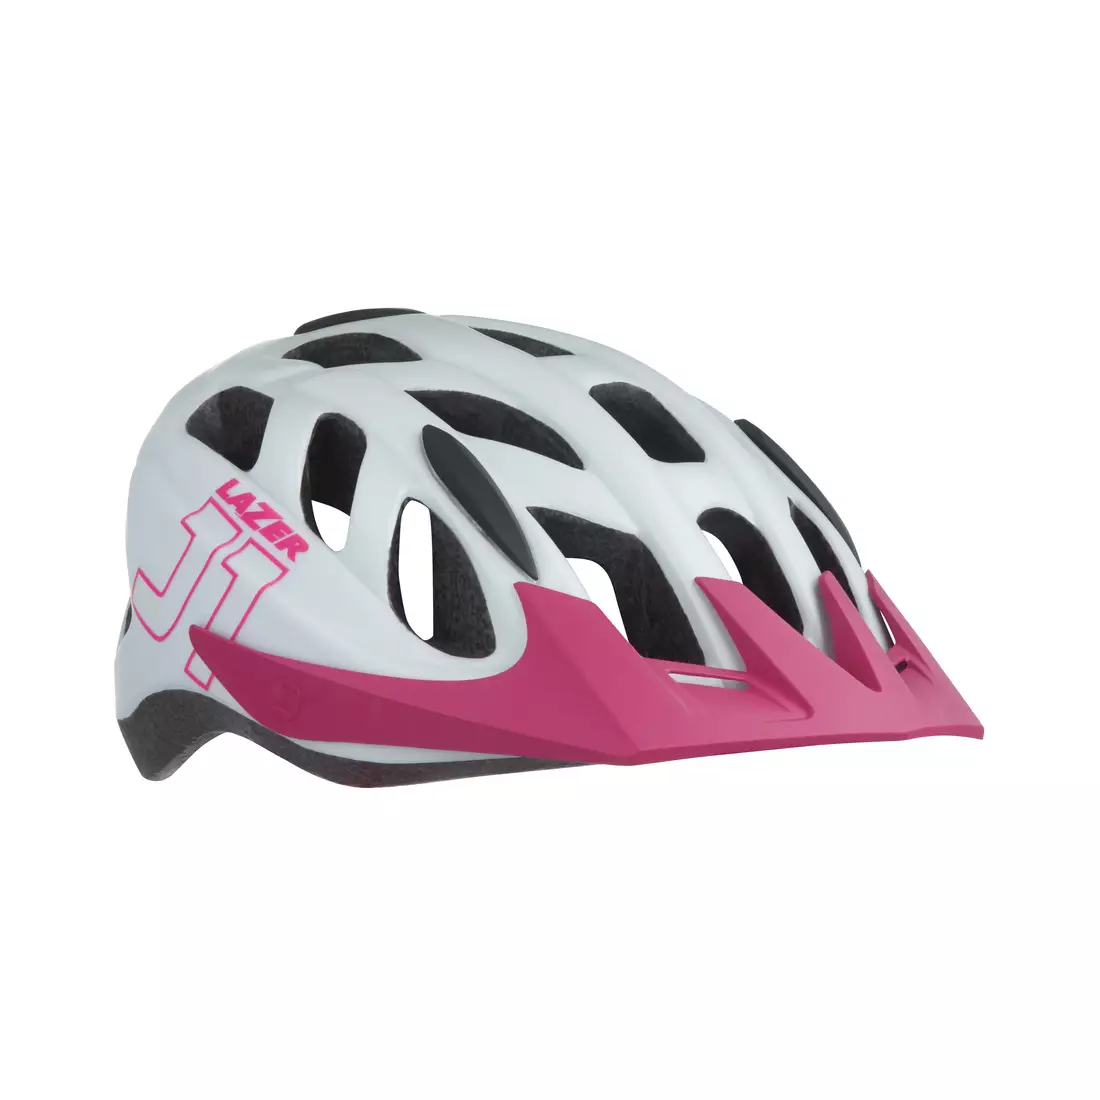 LAZER children's/junior bicycle helmet j1 matte white pink BLC2197885185